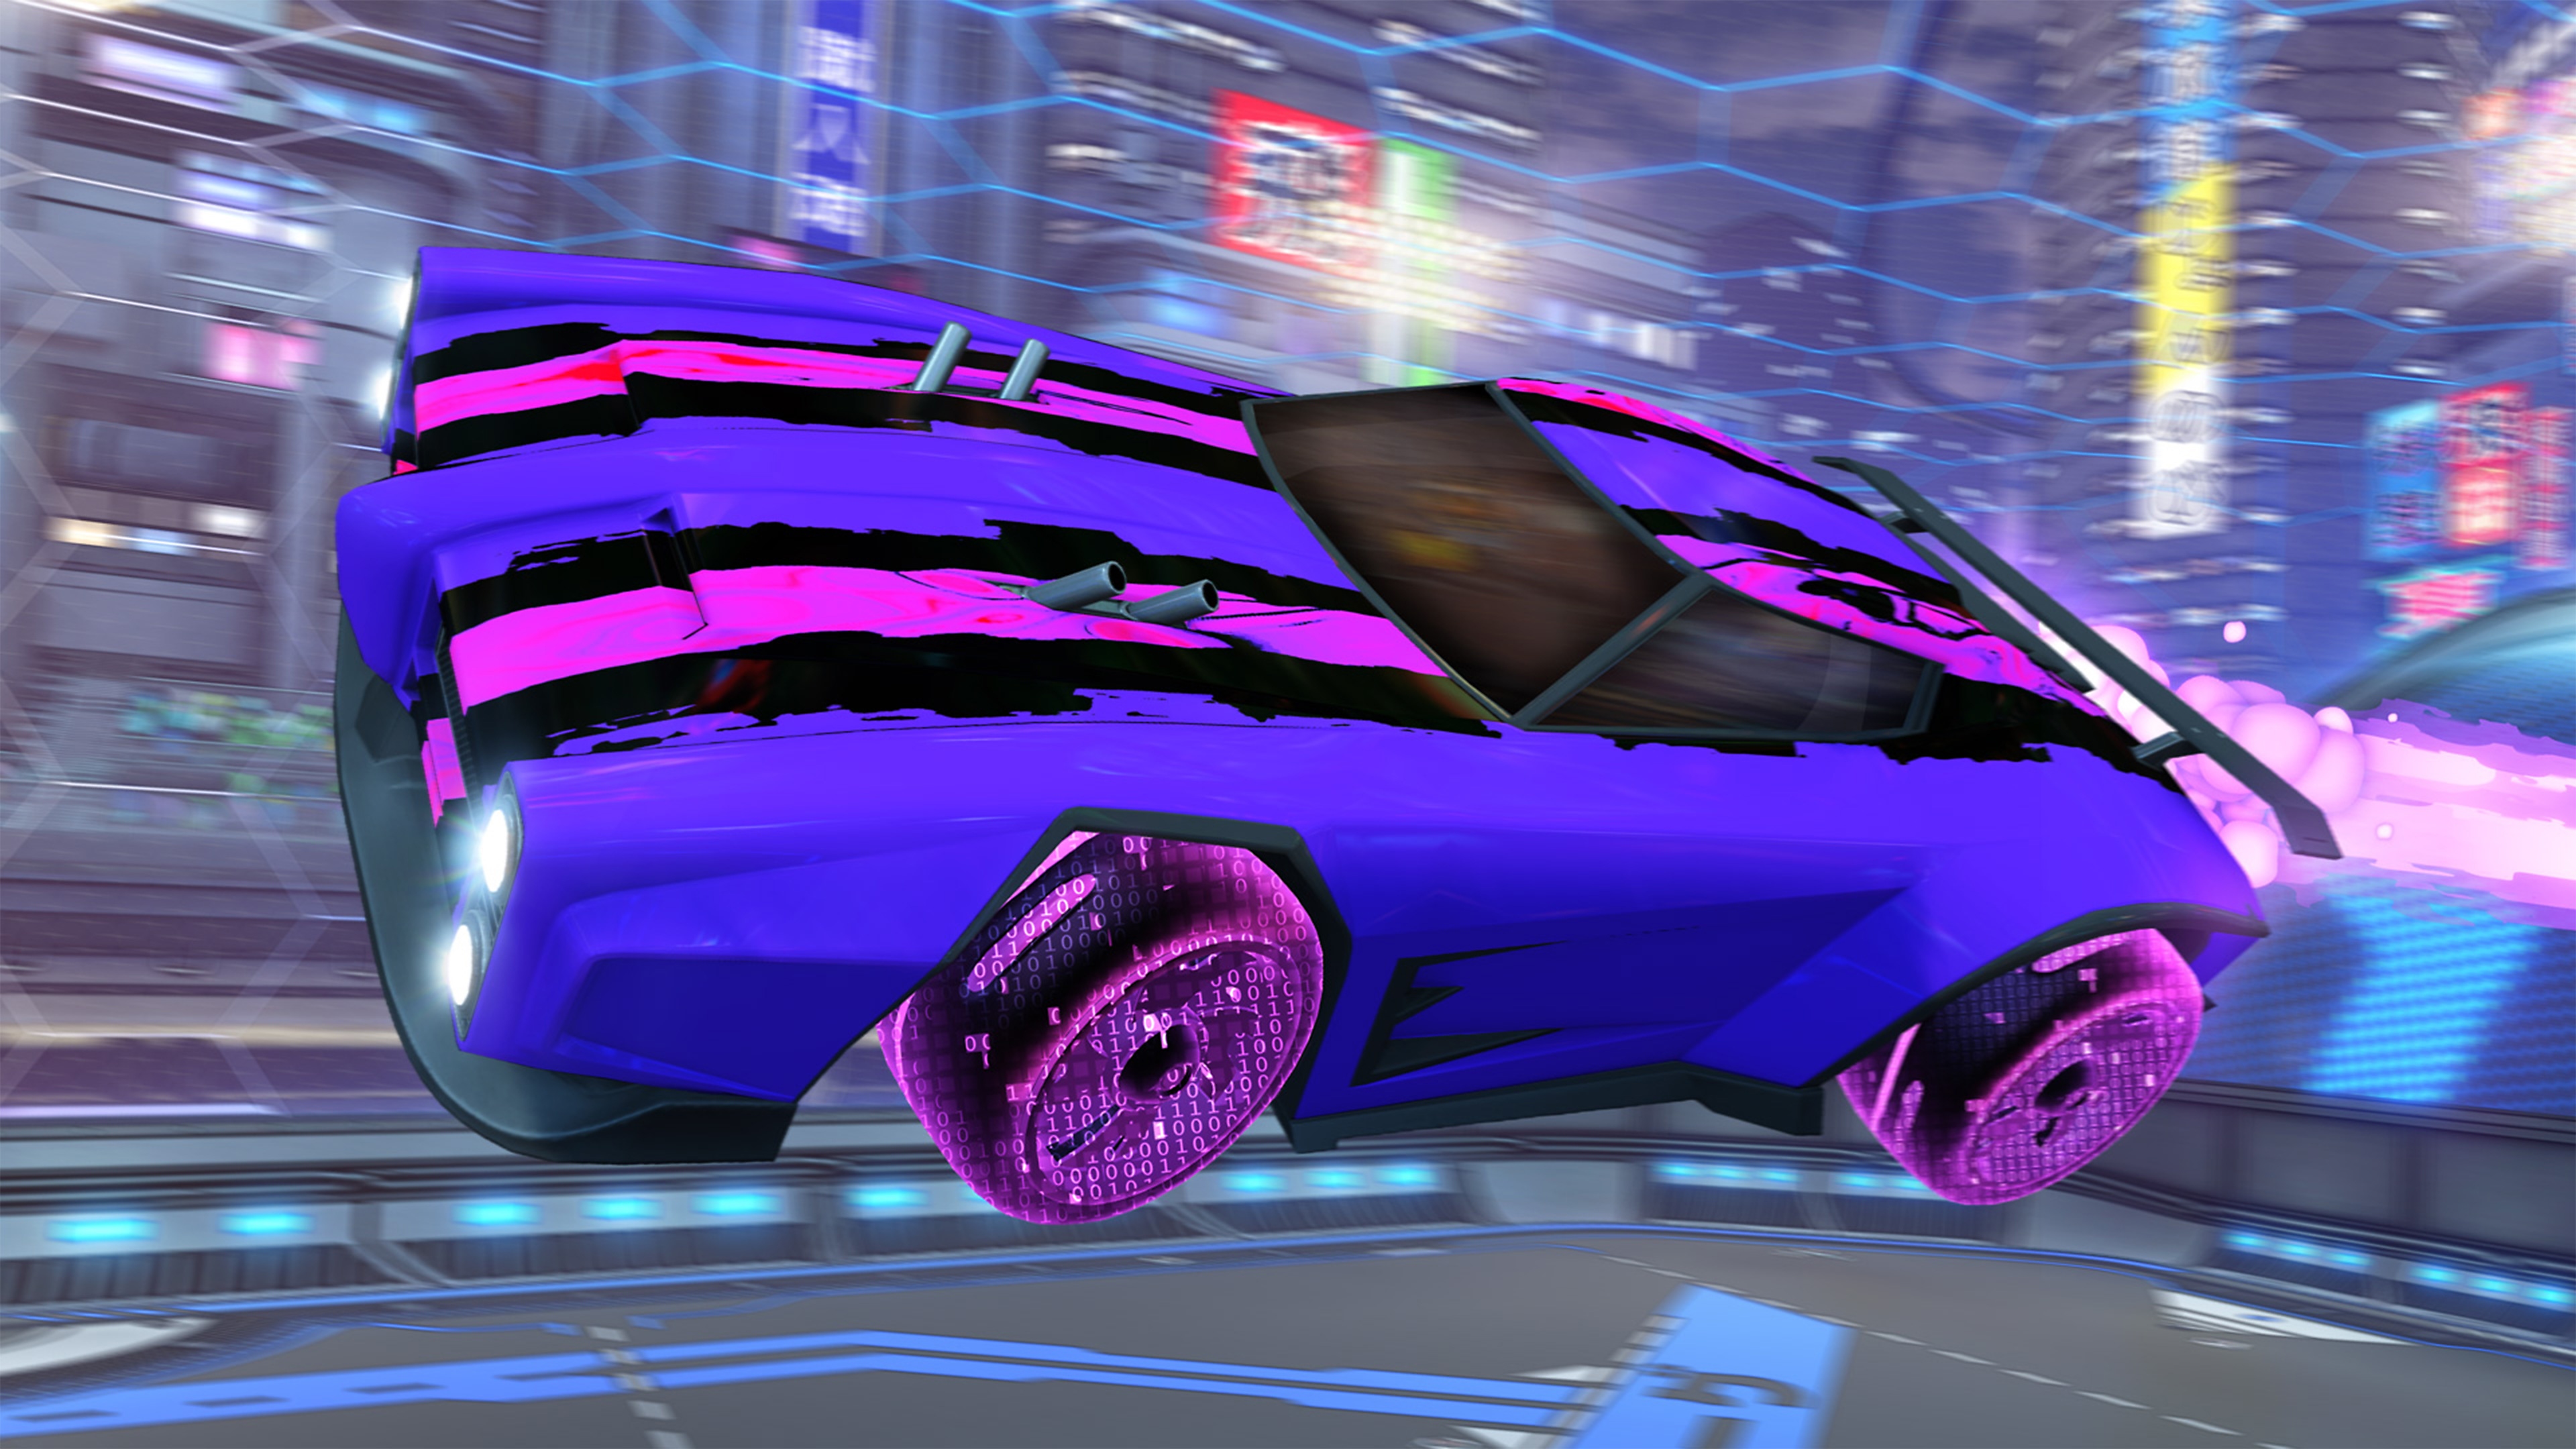 Capture d'écran de Rocket League montrant une voiture violette décorée des bandes roses et noires